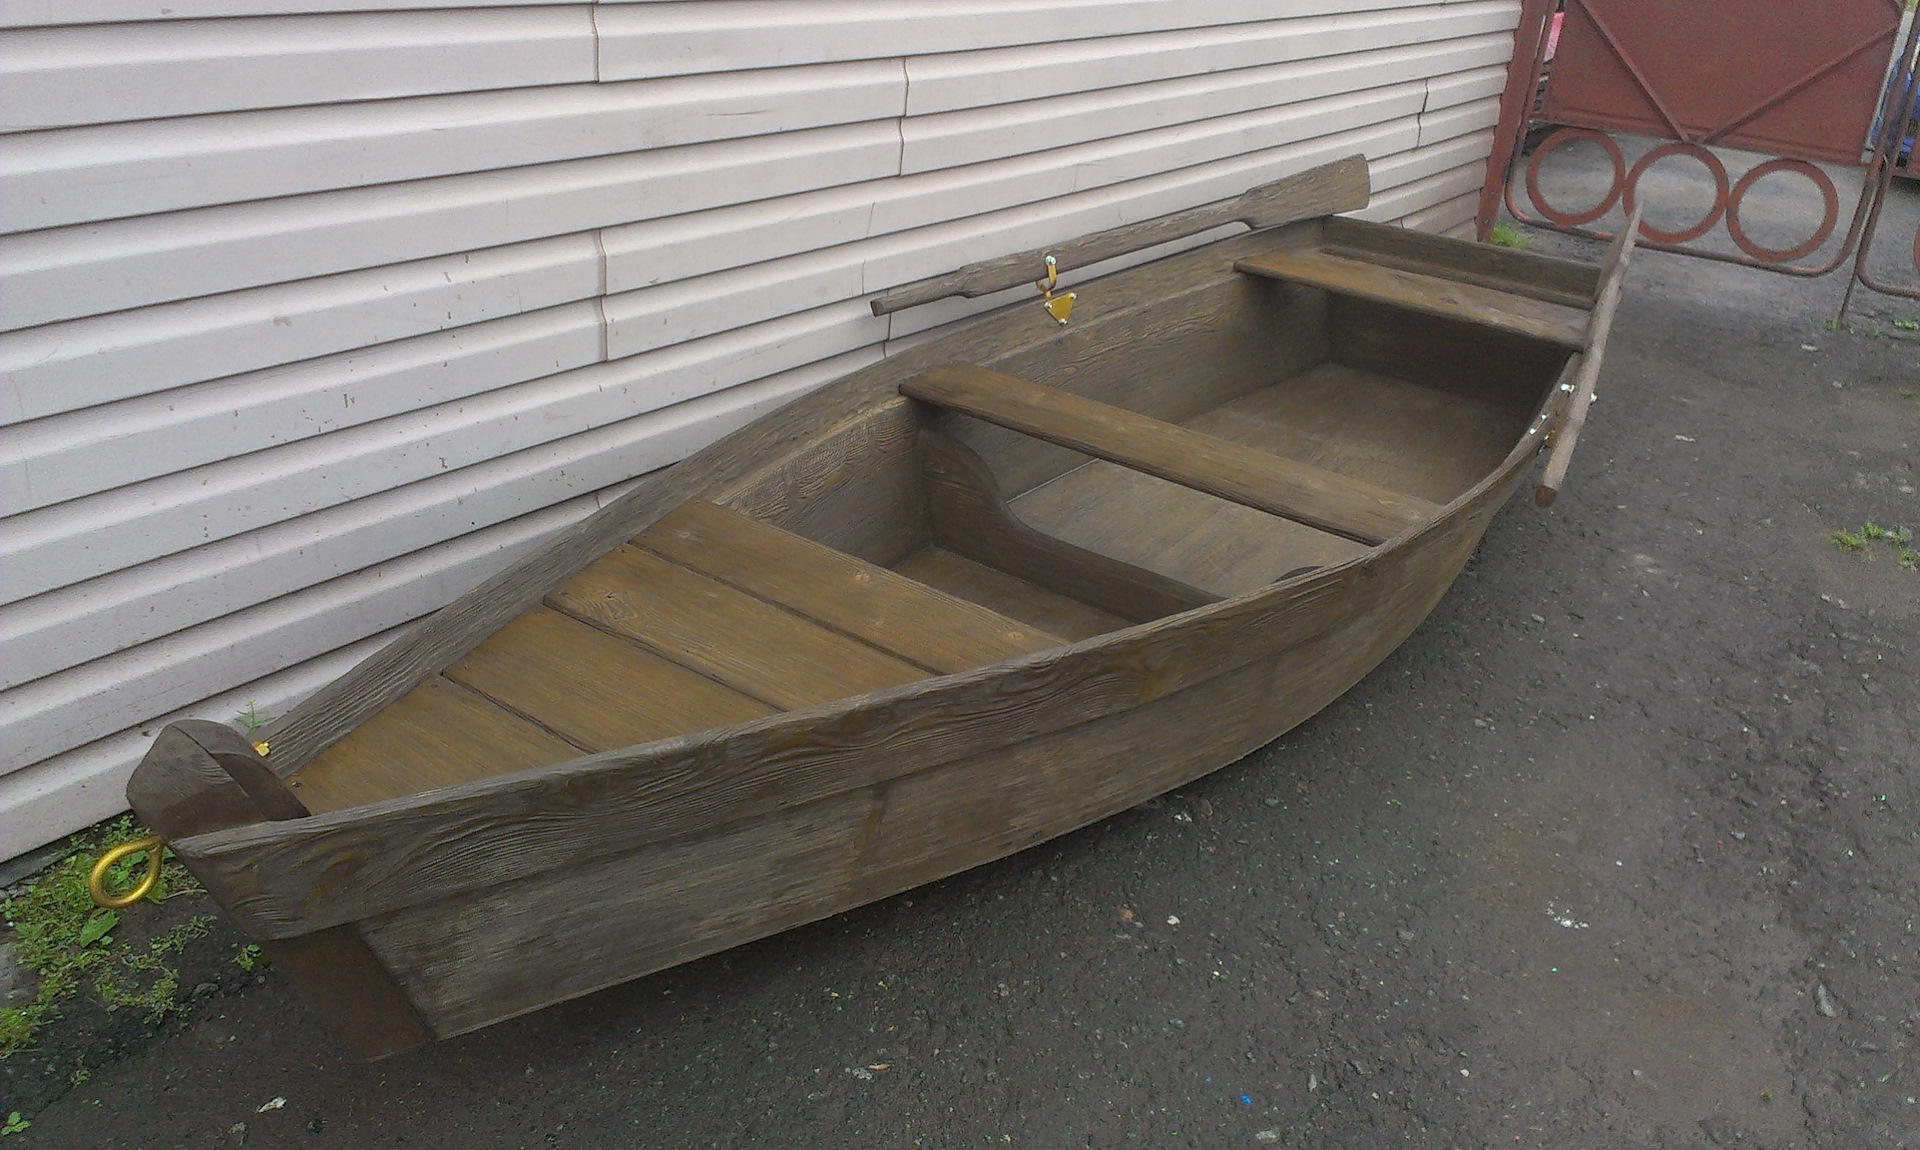 Купить лодку бу в ростовской области. Лодка деревянная. Деревянная лодка для рыбалки. Маленькая деревянная лодка. Старая деревянная лодка.